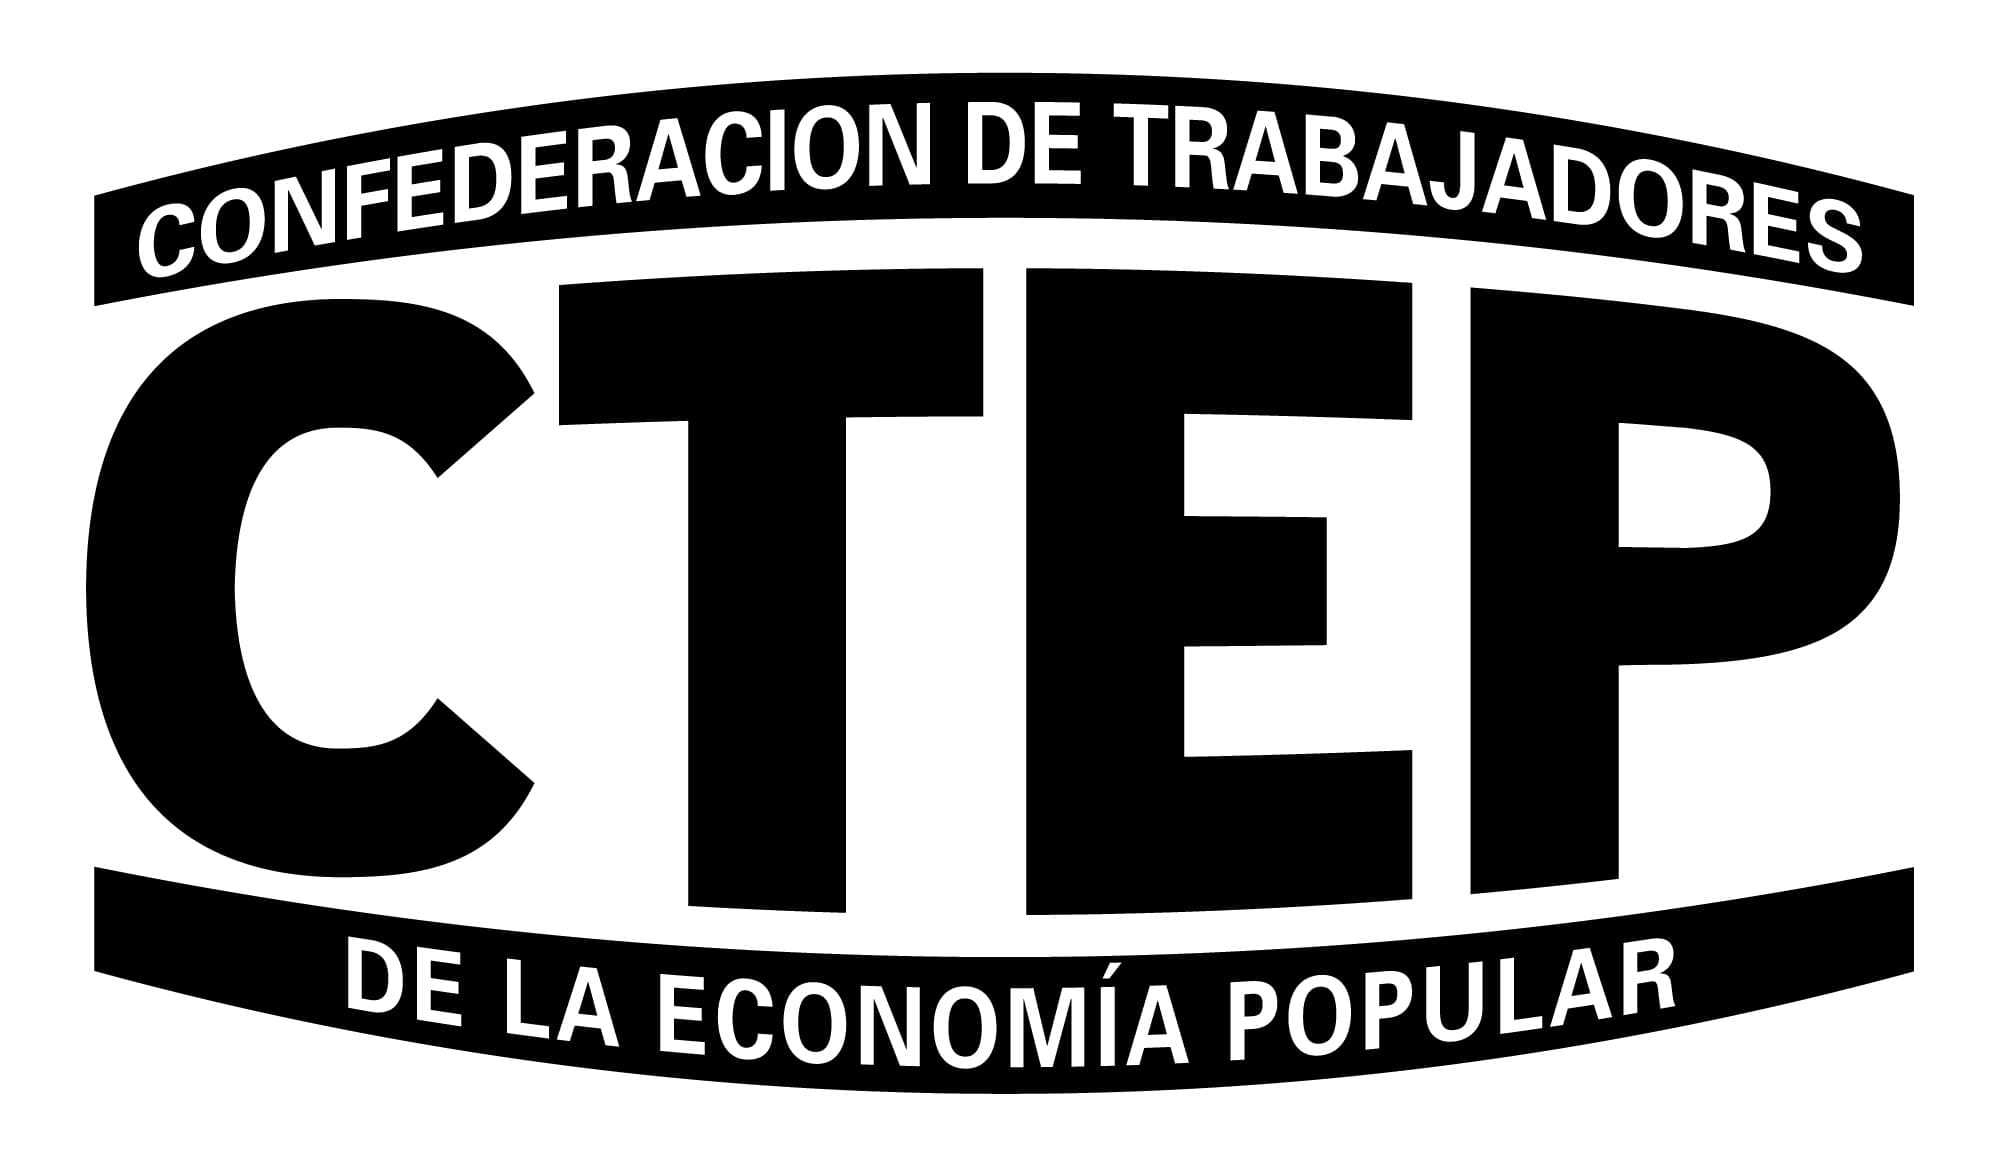 CTEP logo